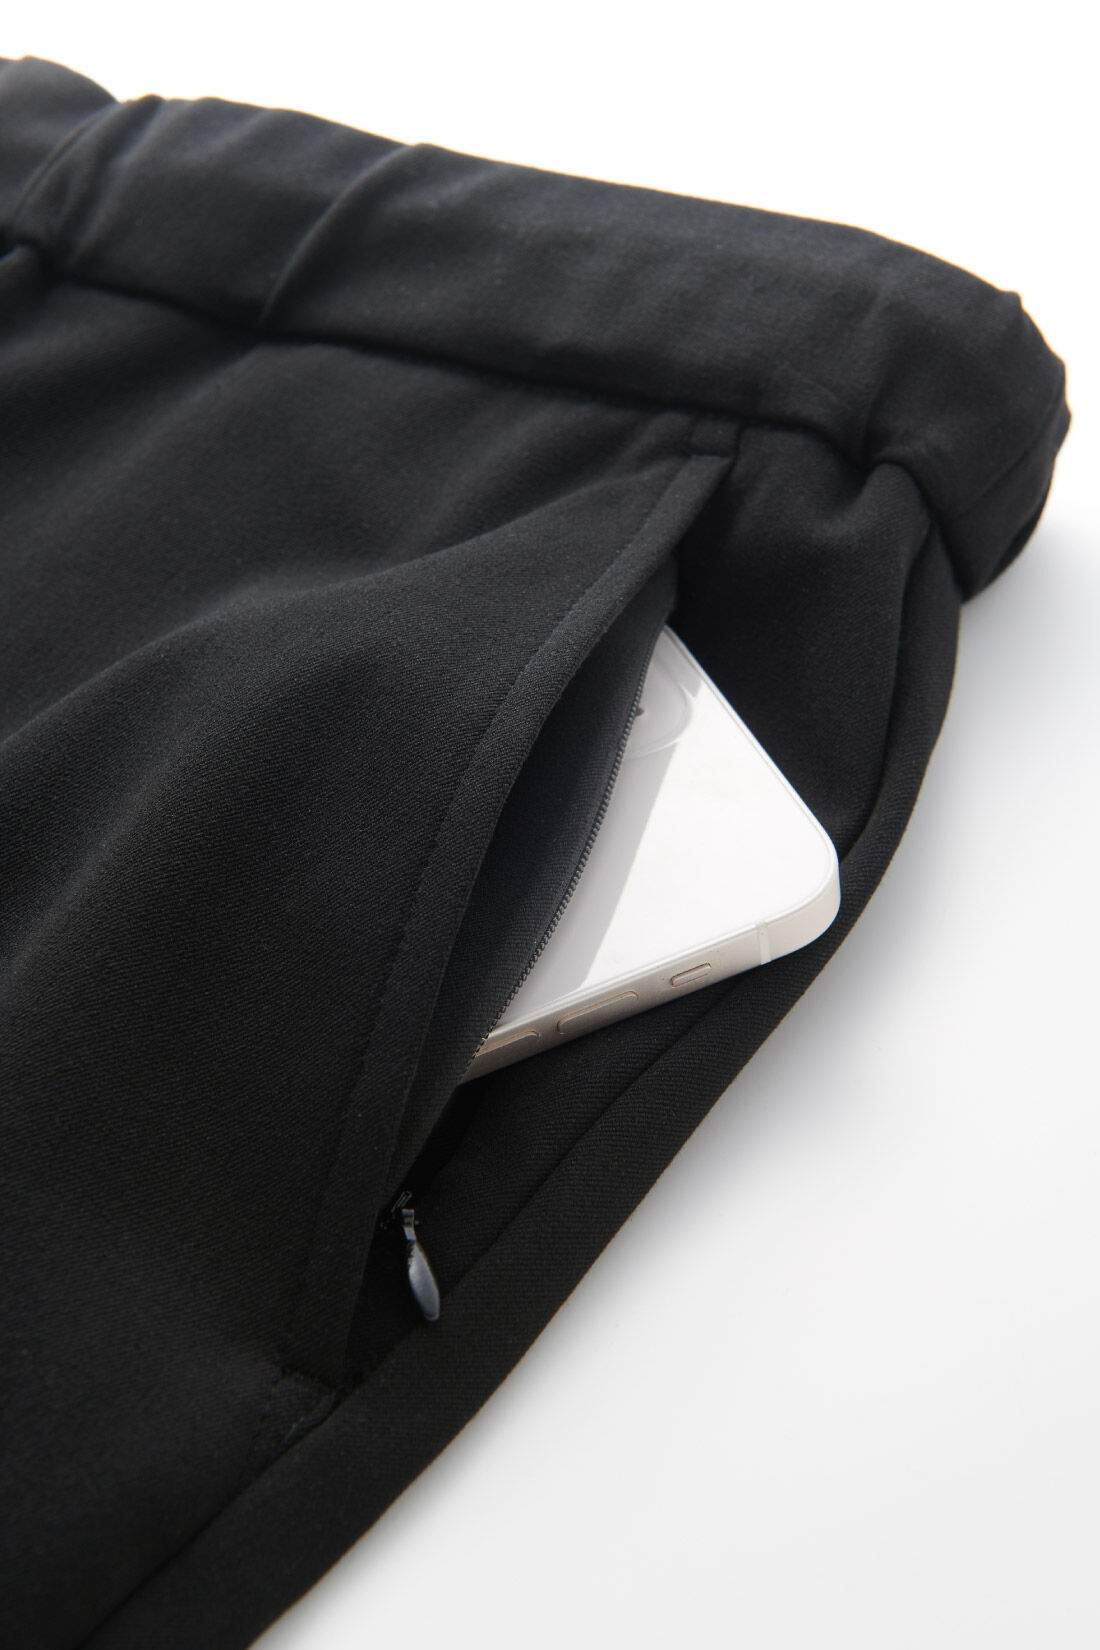 イディット|IEDIT[イディット]　いつまでもキレイな黒が続く 純黒プルオンスマートテーパードメンズパンツ〈ブラック〉|フロントサイドの左側ポケットには、スマホを入れるのにぴったりなファスナー仕様の隠しポケット付き。